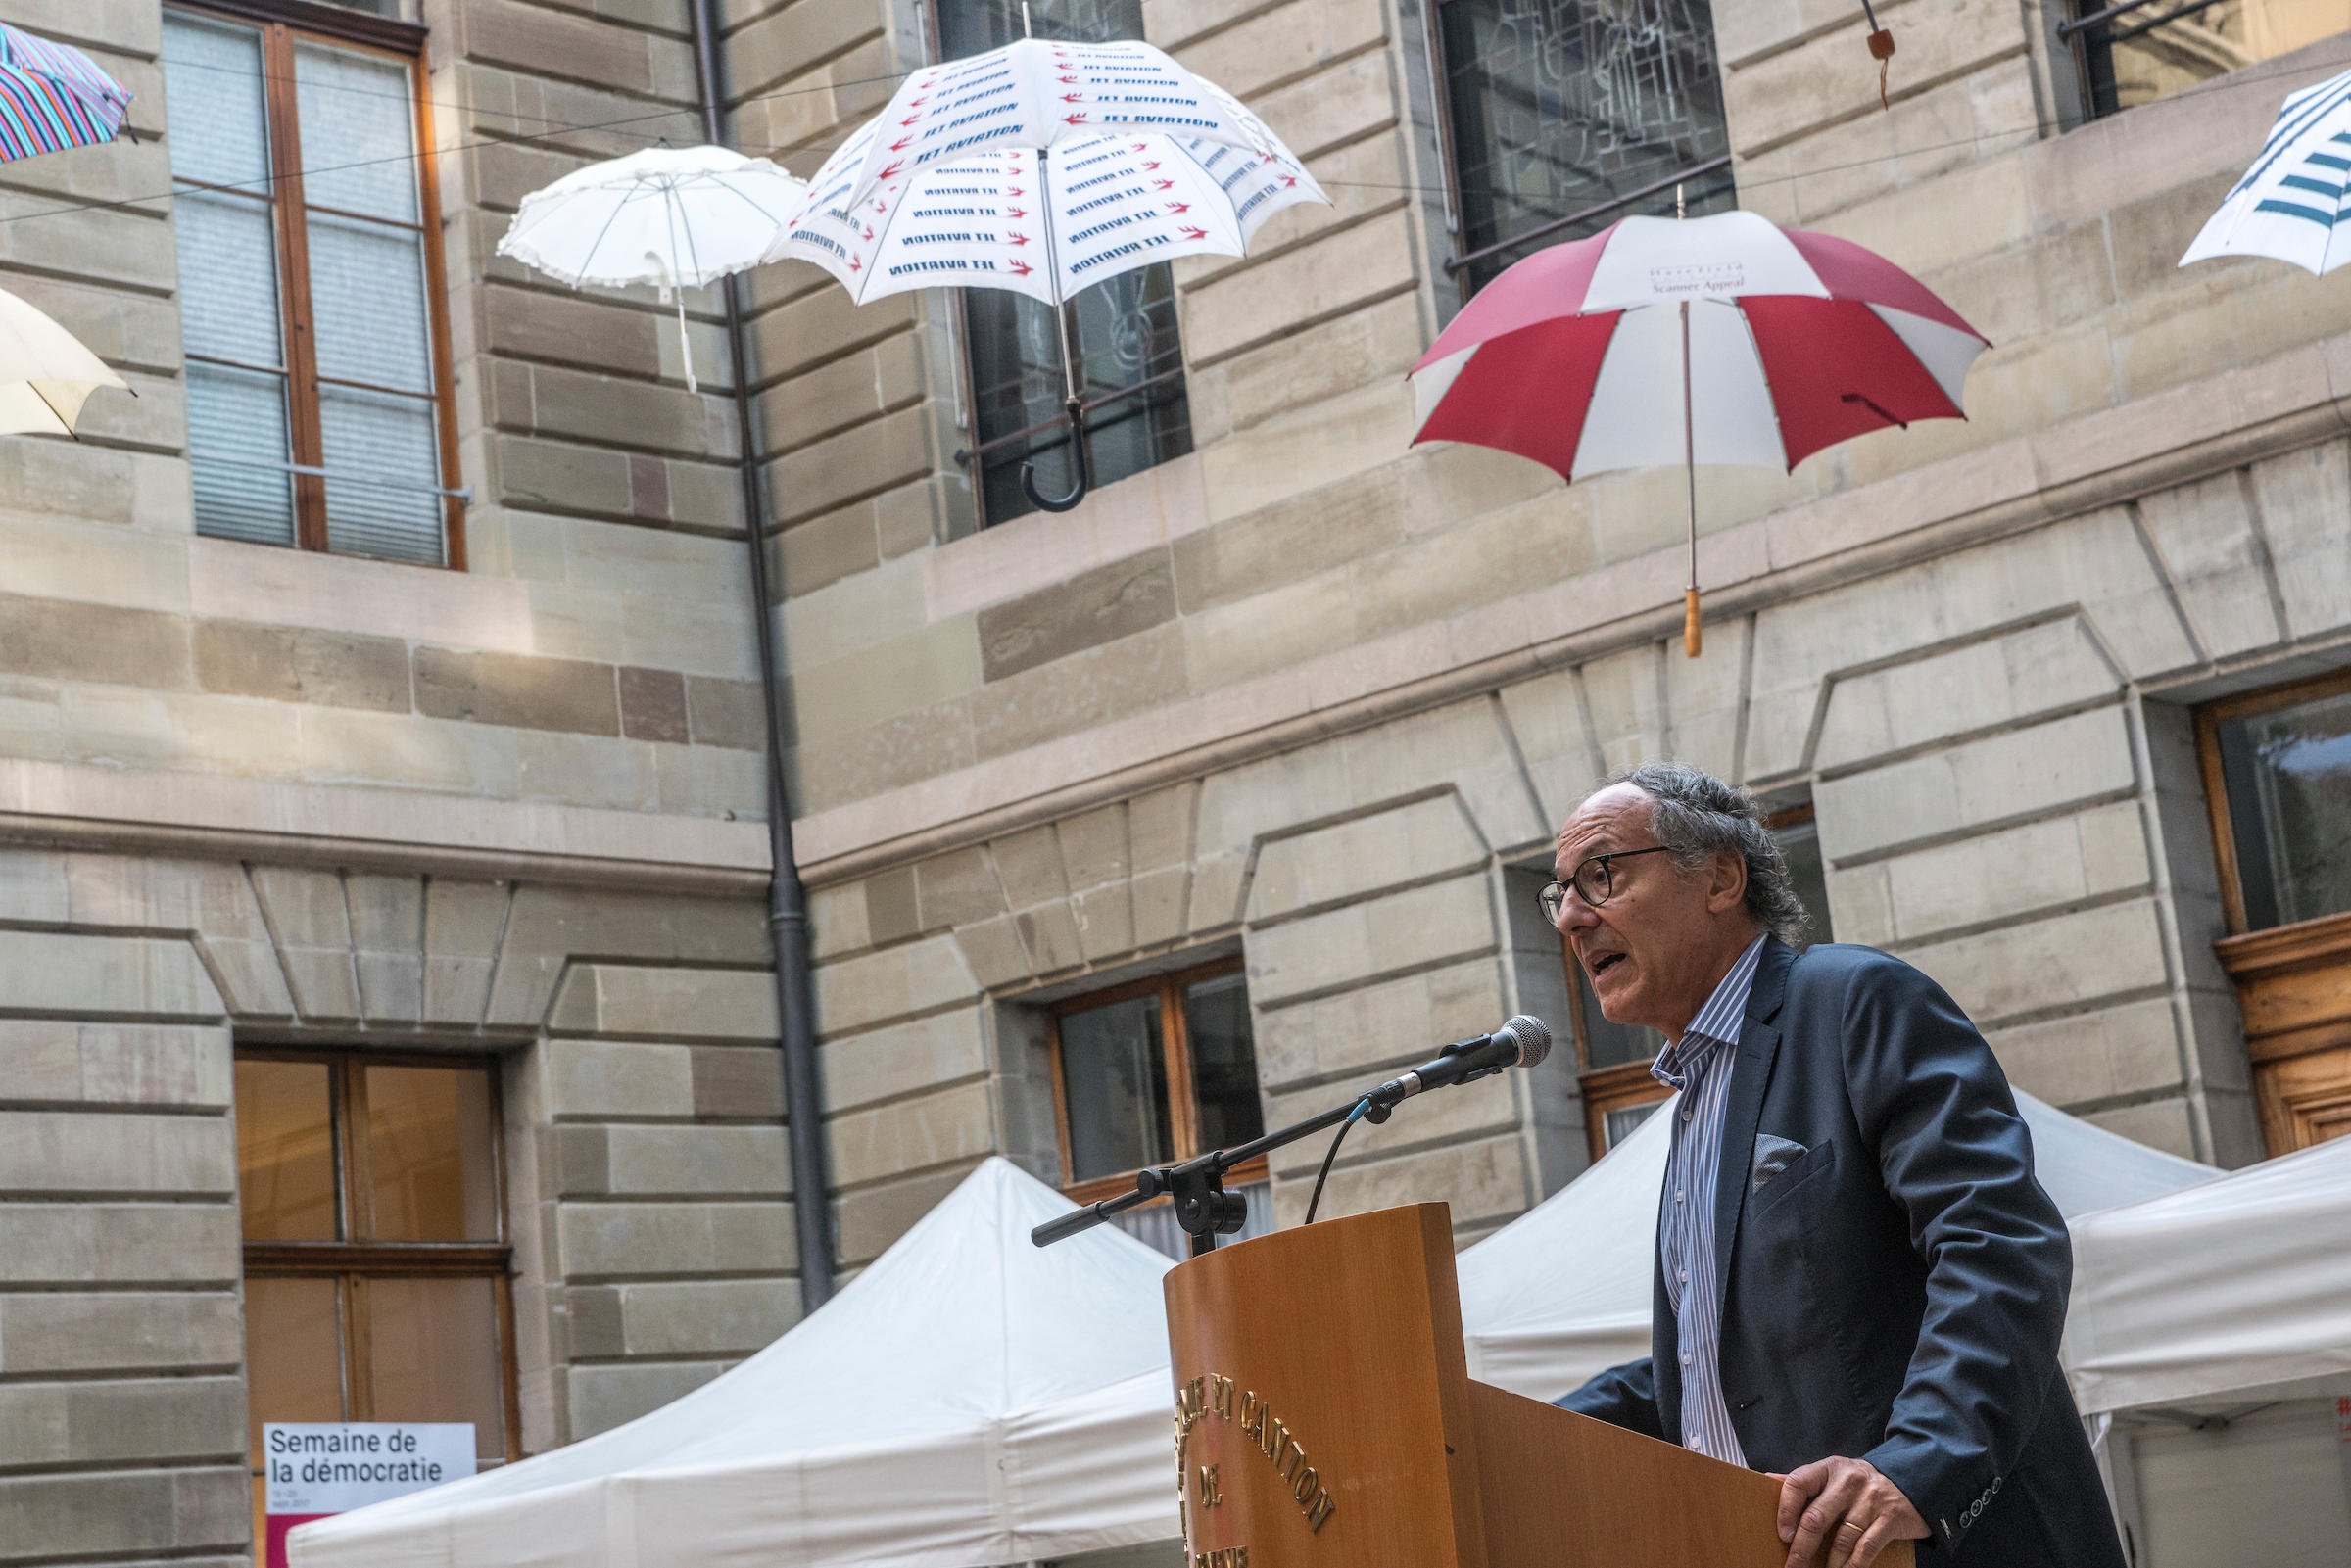 إيف فلوكيغر، نائب رئيس جامعة جنيف يخاطب تجمعا جماهيريا في الهواء الطلق